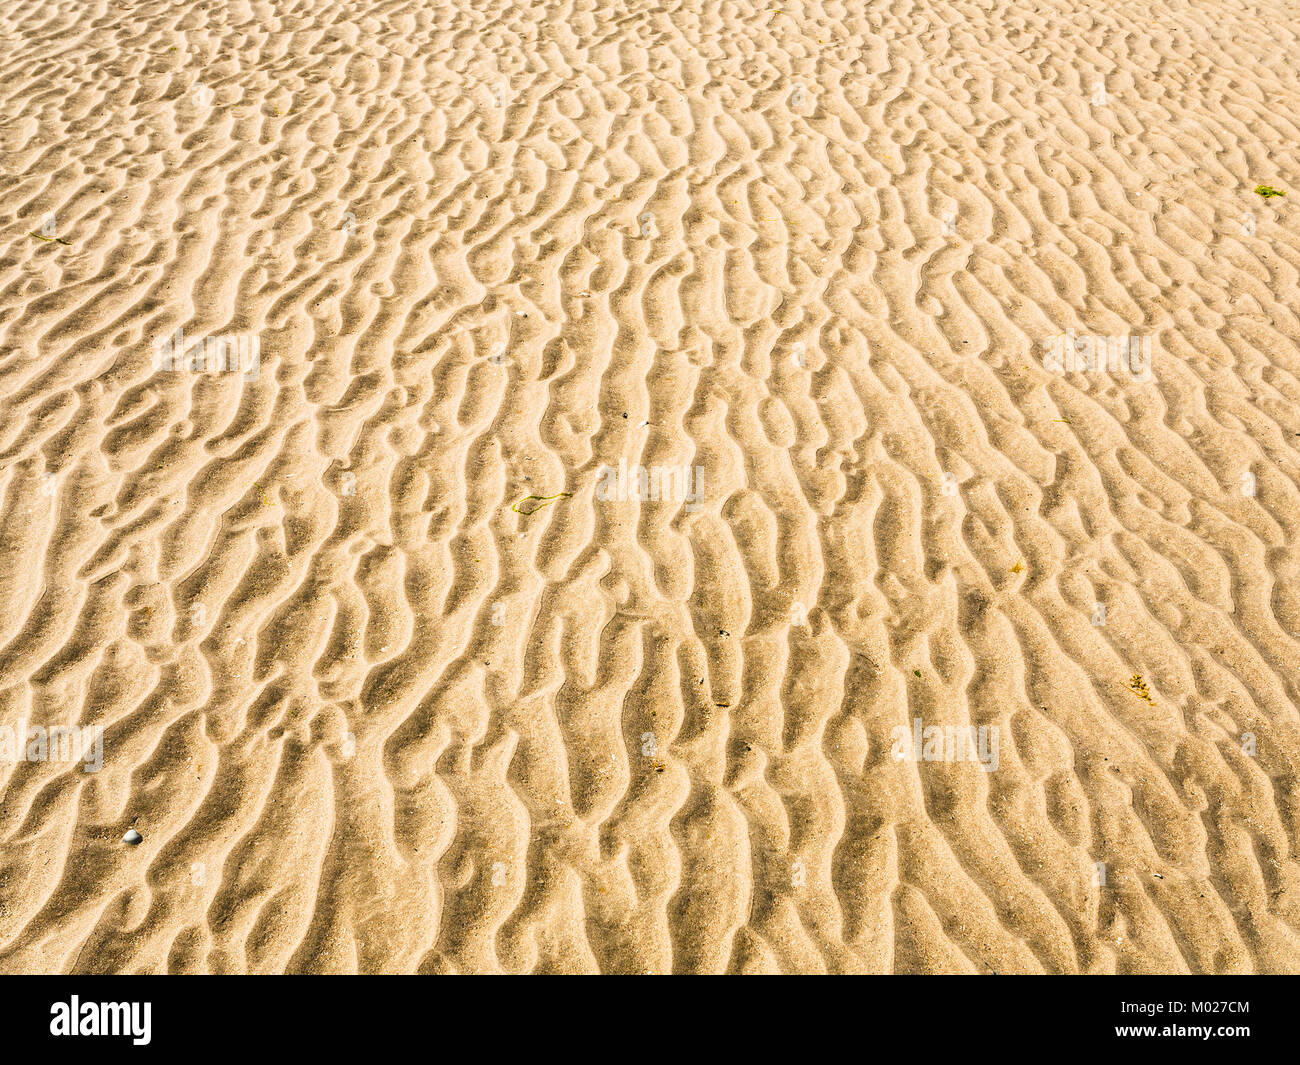 Le touquet paris plage Banque de photographies et d'images à haute  résolution - Page 2 - Alamy